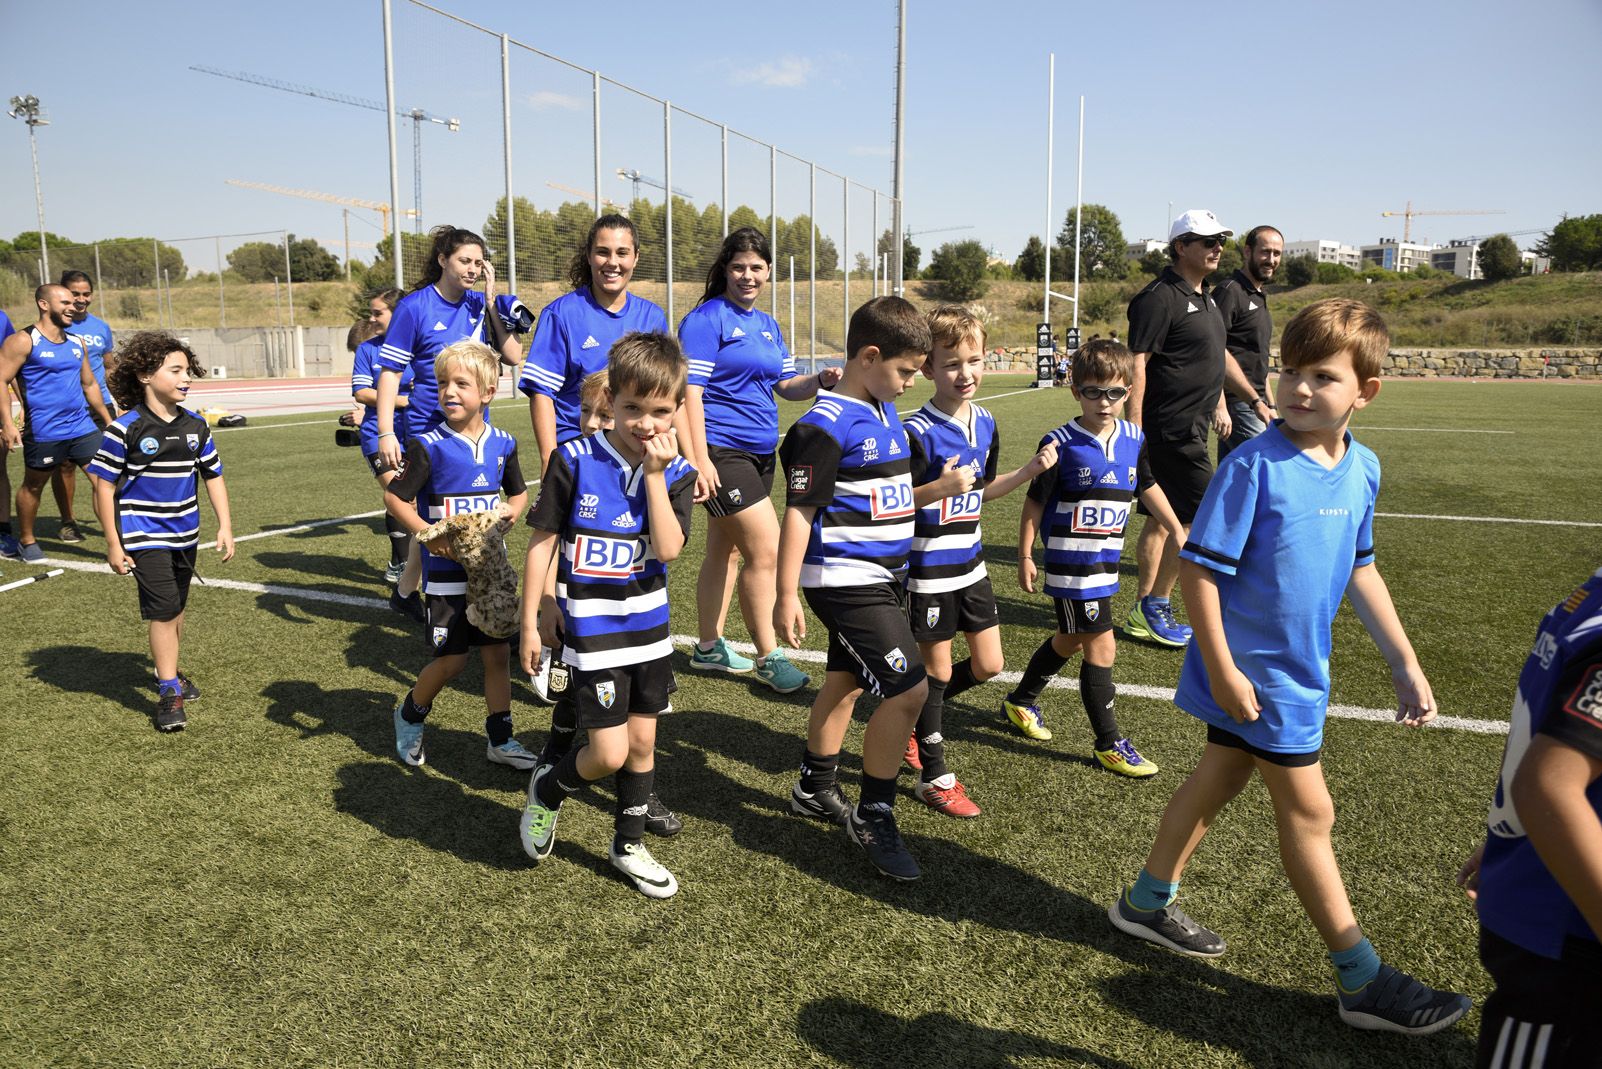 presentacio Club rugby Sant Cugat 2Presentació dels equips de Rubgy de Sant Cugat. Foto: Bernat Millet.